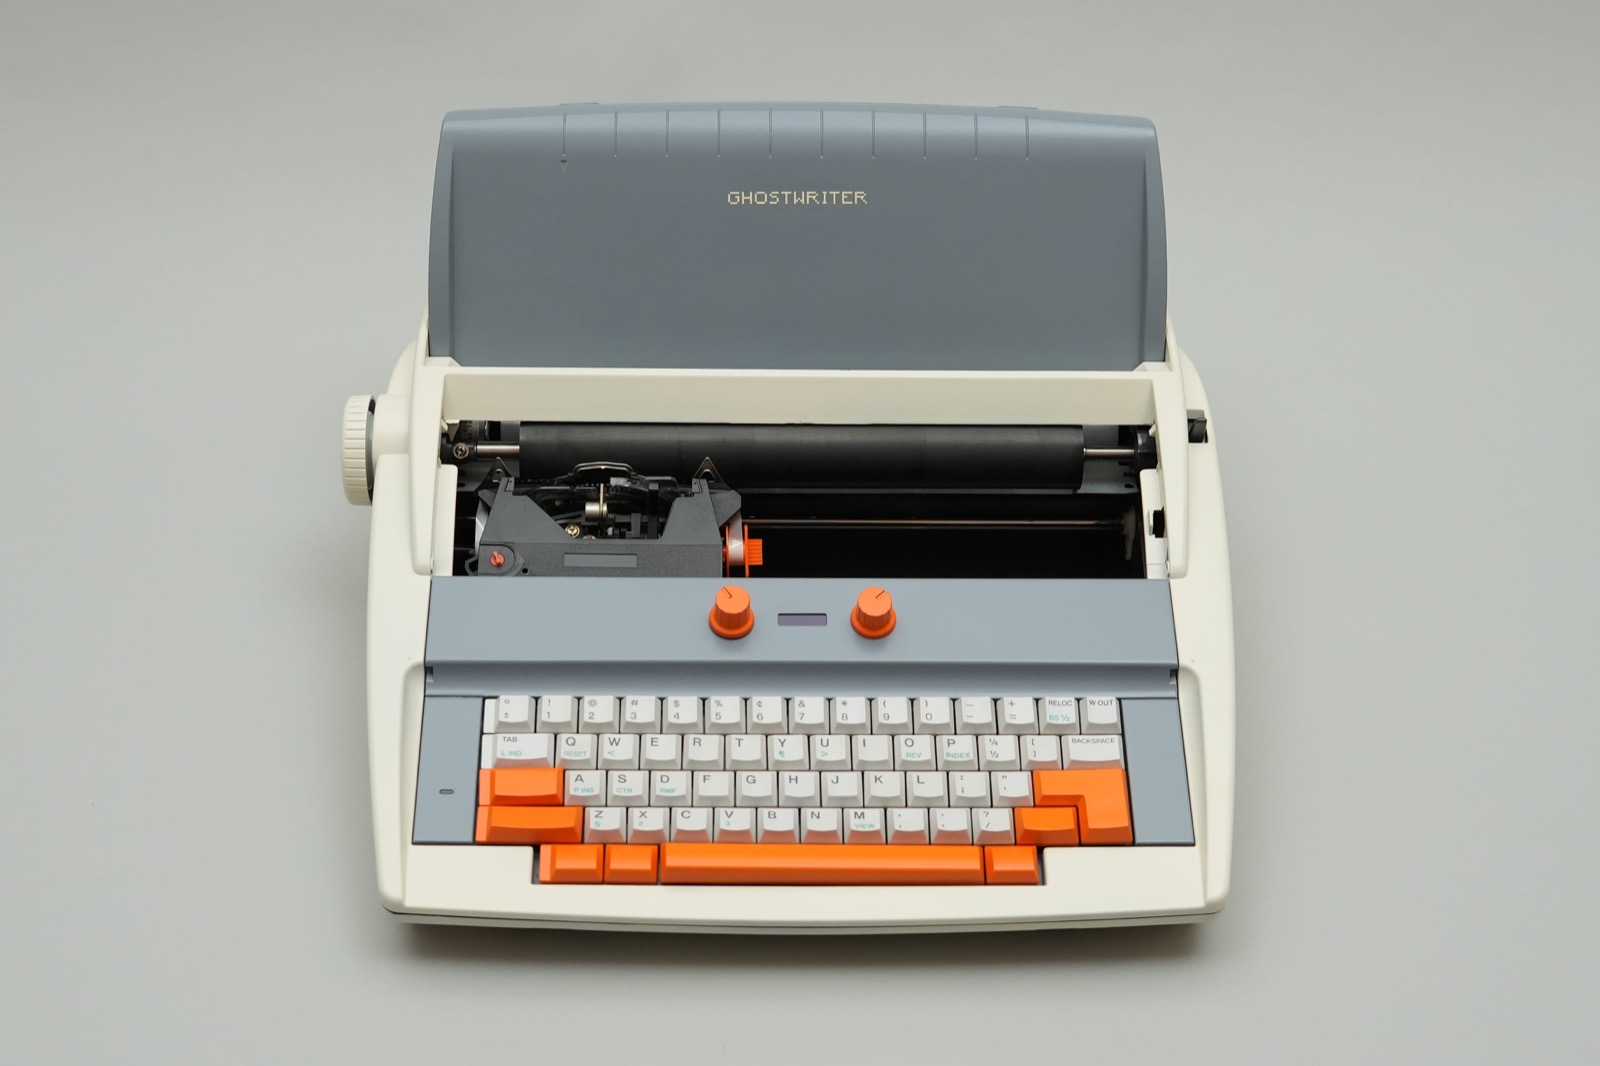 Un entusiasta ha creado Ghostwriter, una máquina de escribir con inteligencia artificial con la que puedes hablar